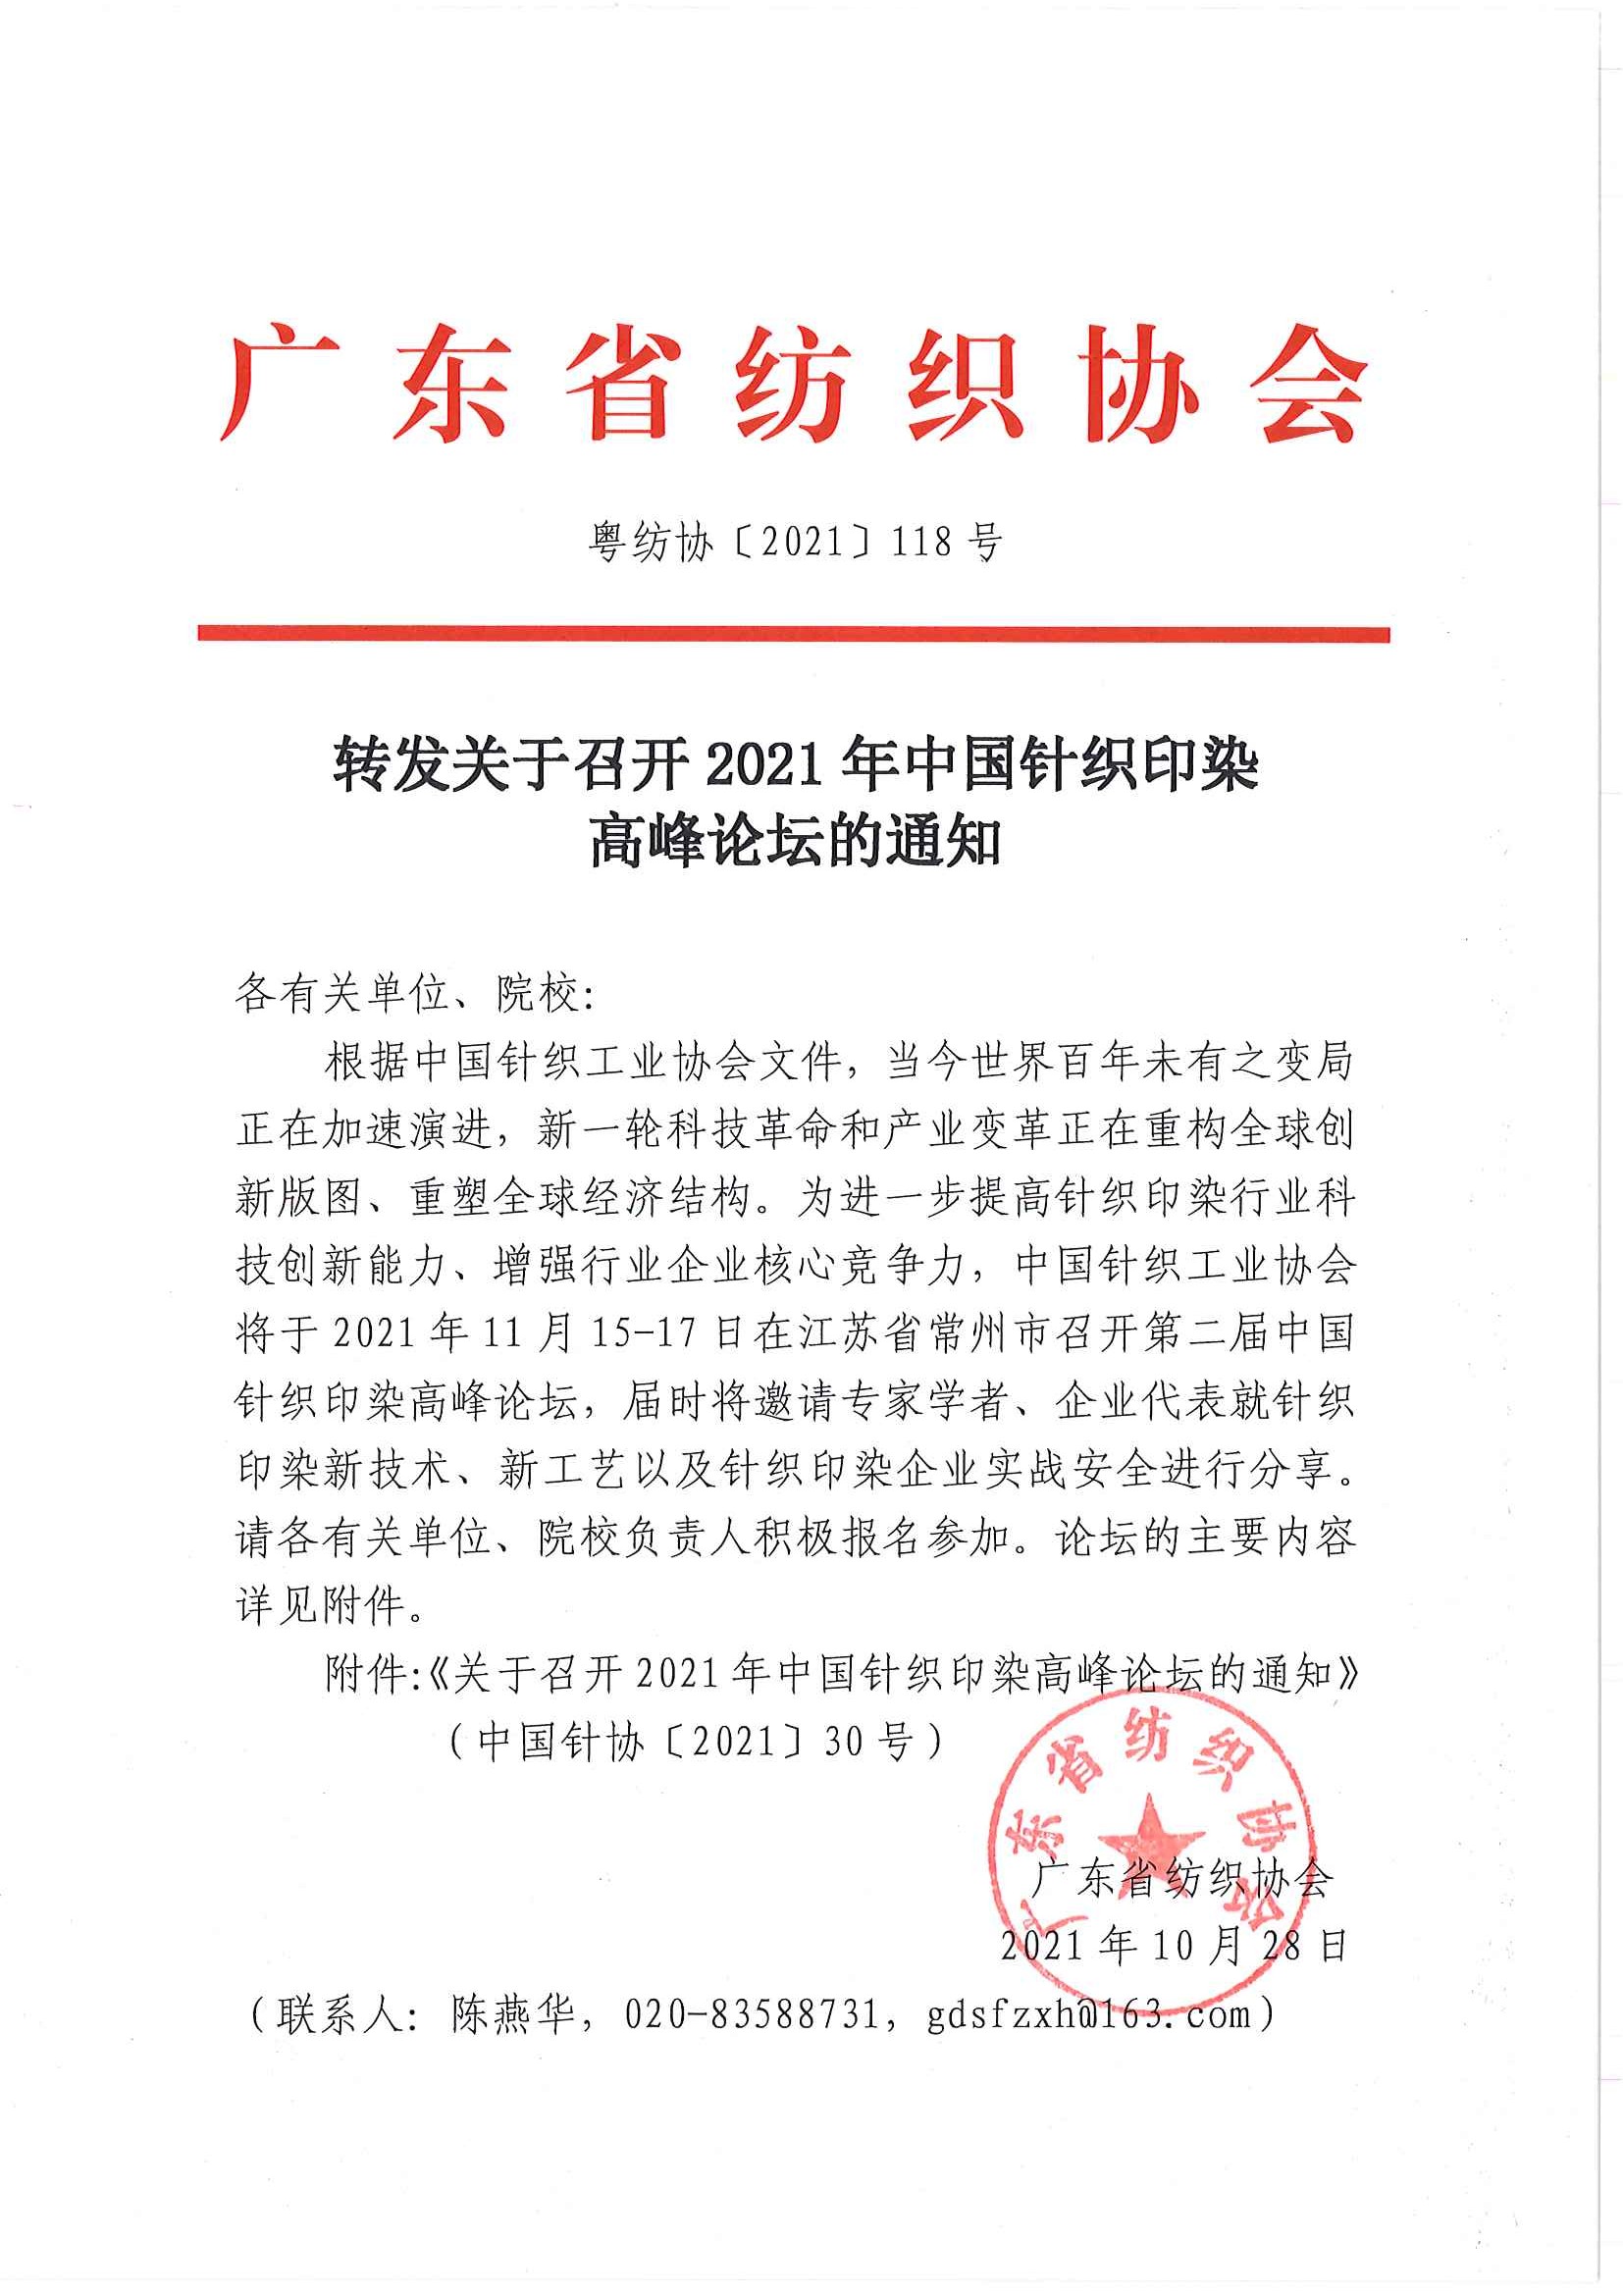 转发关于召开2021年中国针织印染高峰论坛的通知_页面_1.jpg